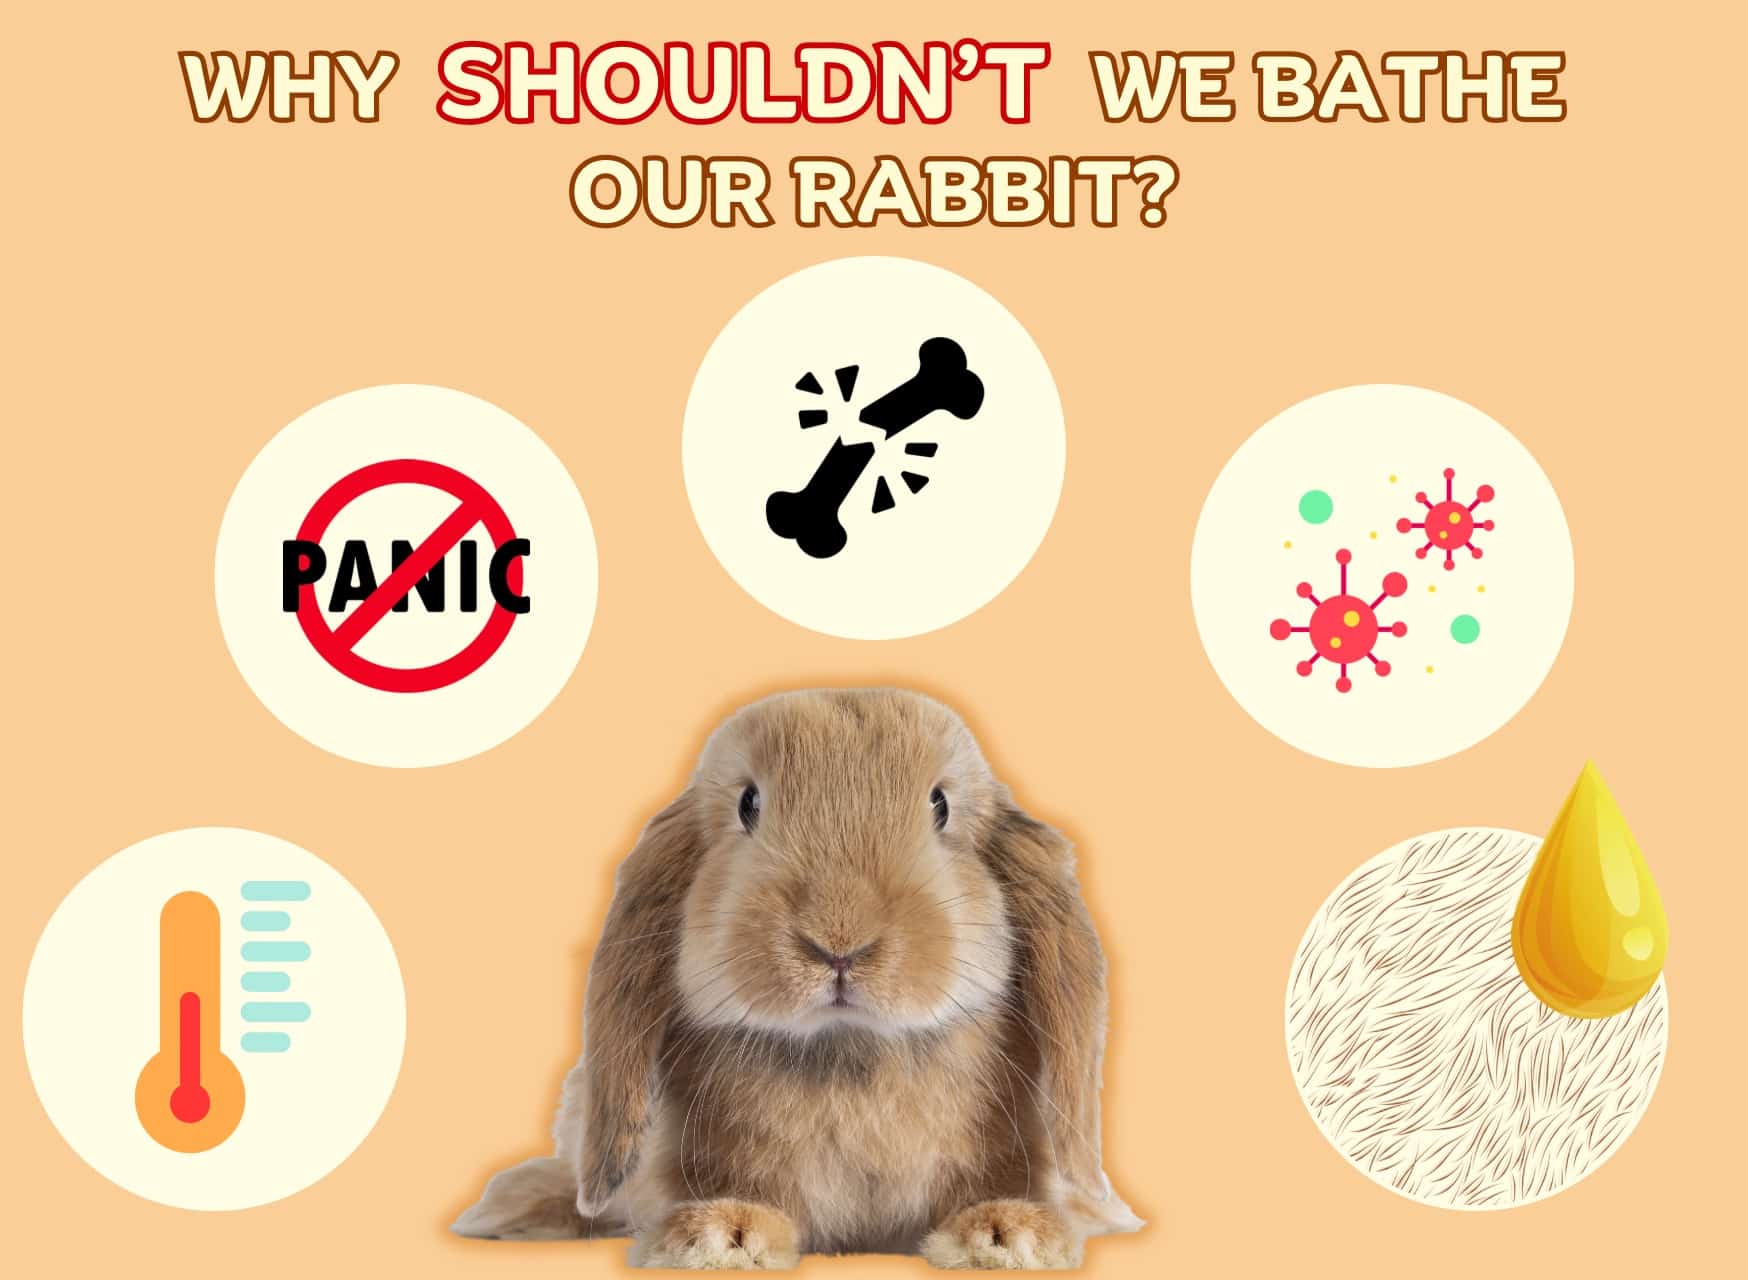 How To Bathe A Rabbit, Bathe Your Rabbit, Why Shouldn’t We Bathe Our Rabbit